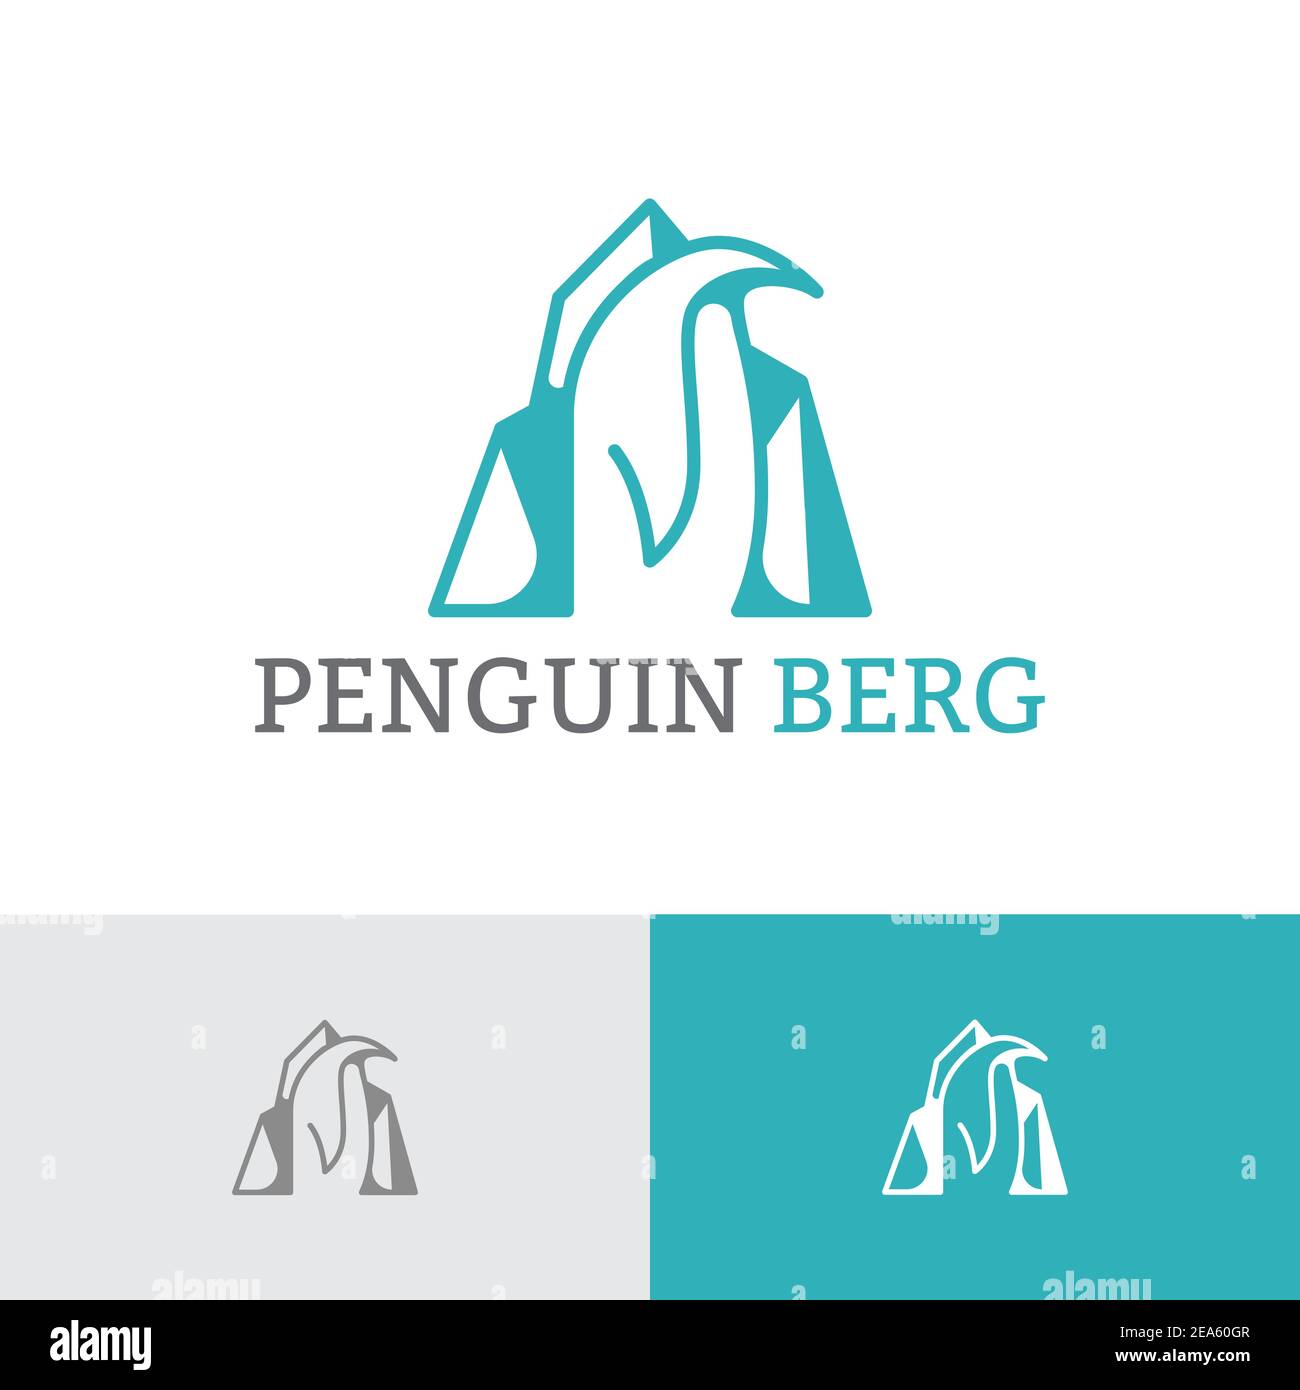 Pinguino Ice Berg Polar Animal Cool Logo Template Illustrazione Vettoriale